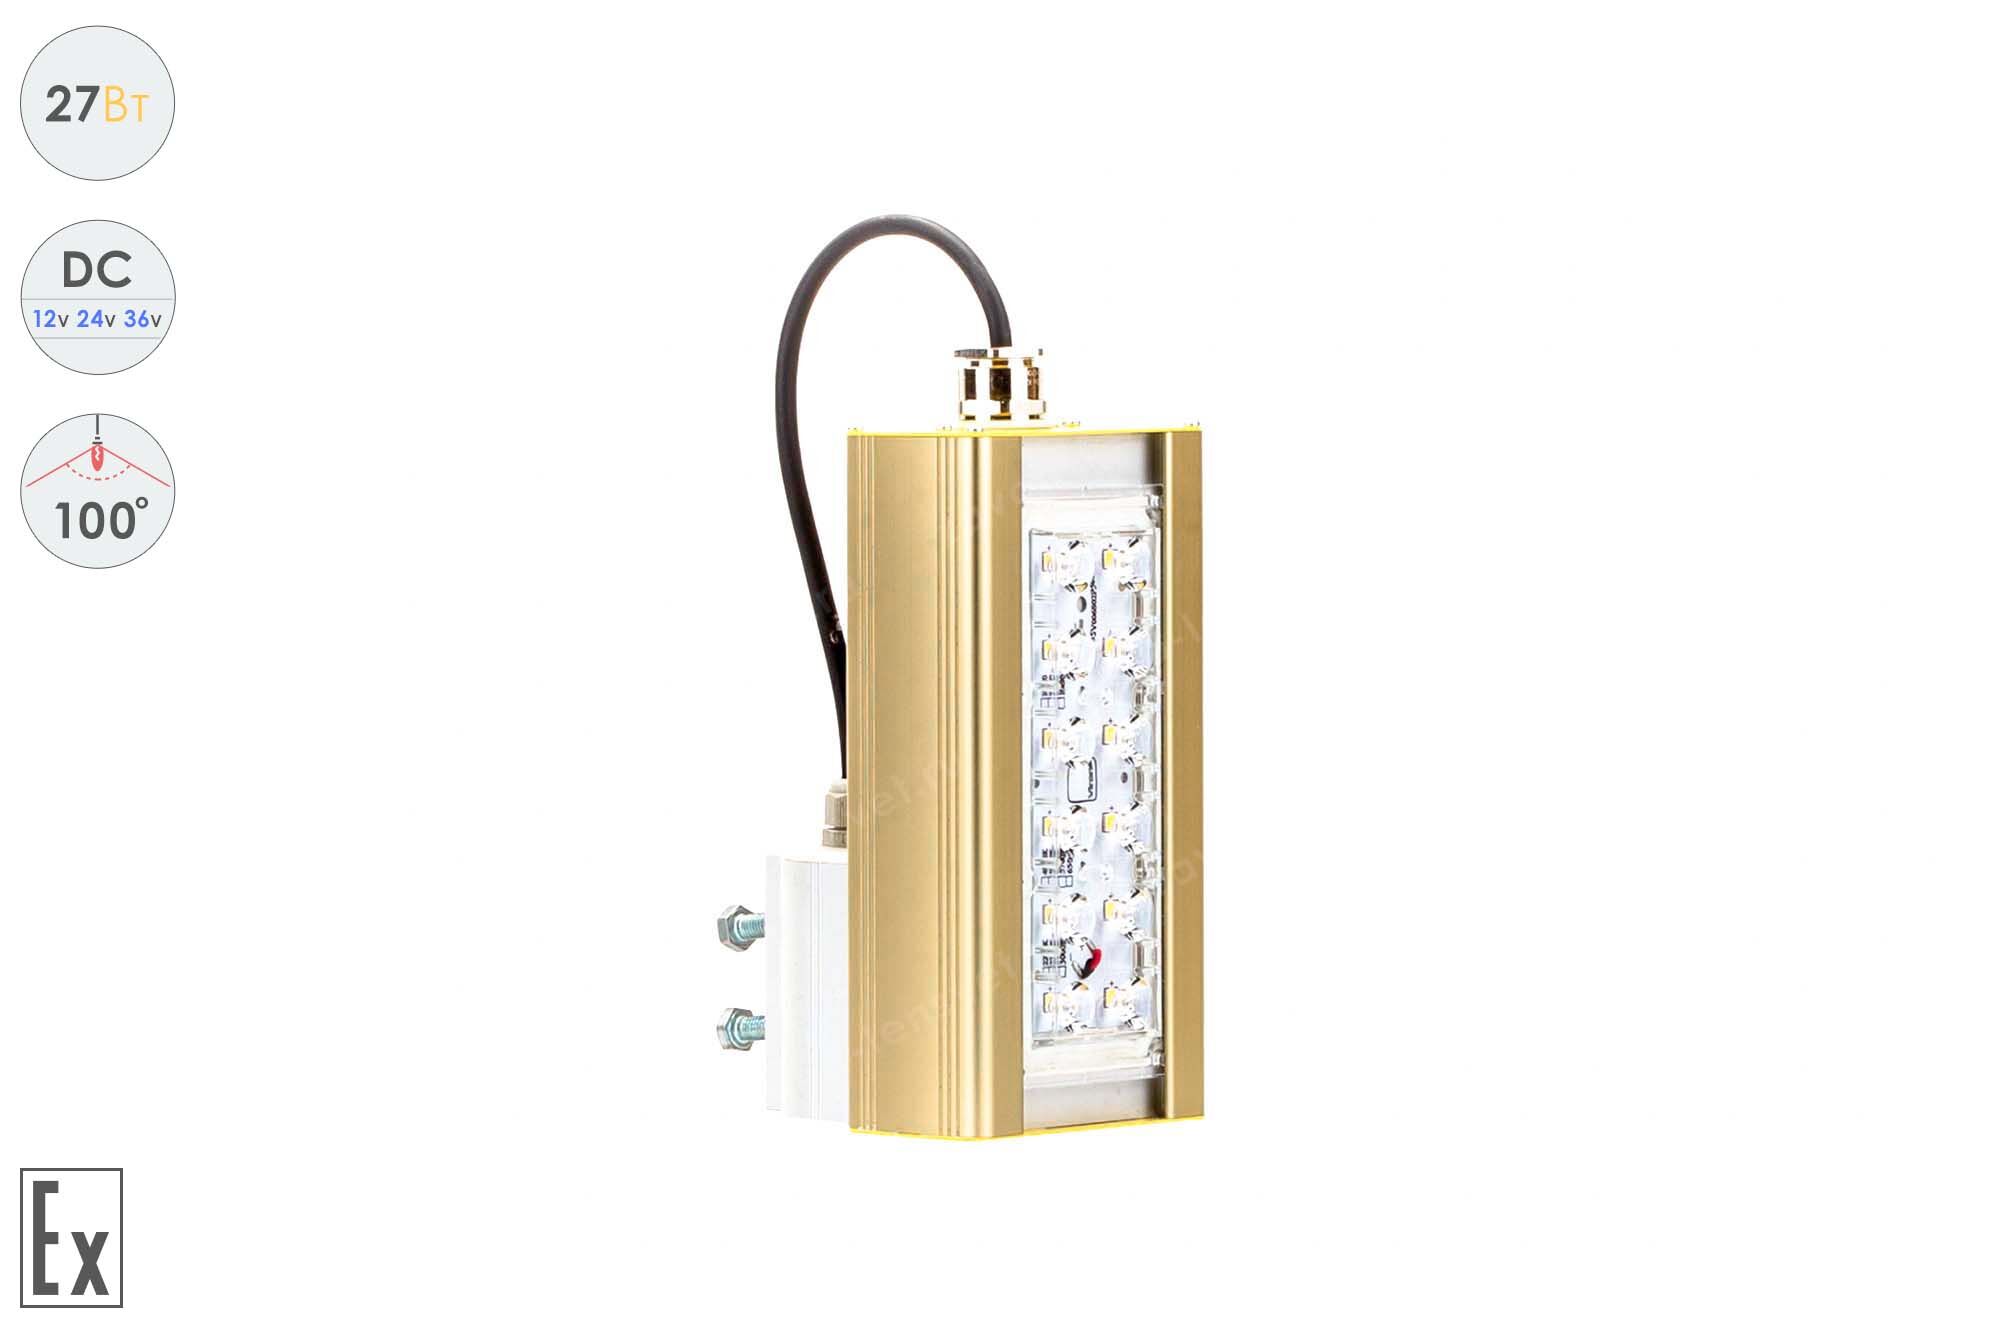 Светодиодный светильник Низковольтный Прожектор Взрывозащищенный GOLD, консоль K-1, 27 Вт, 100°